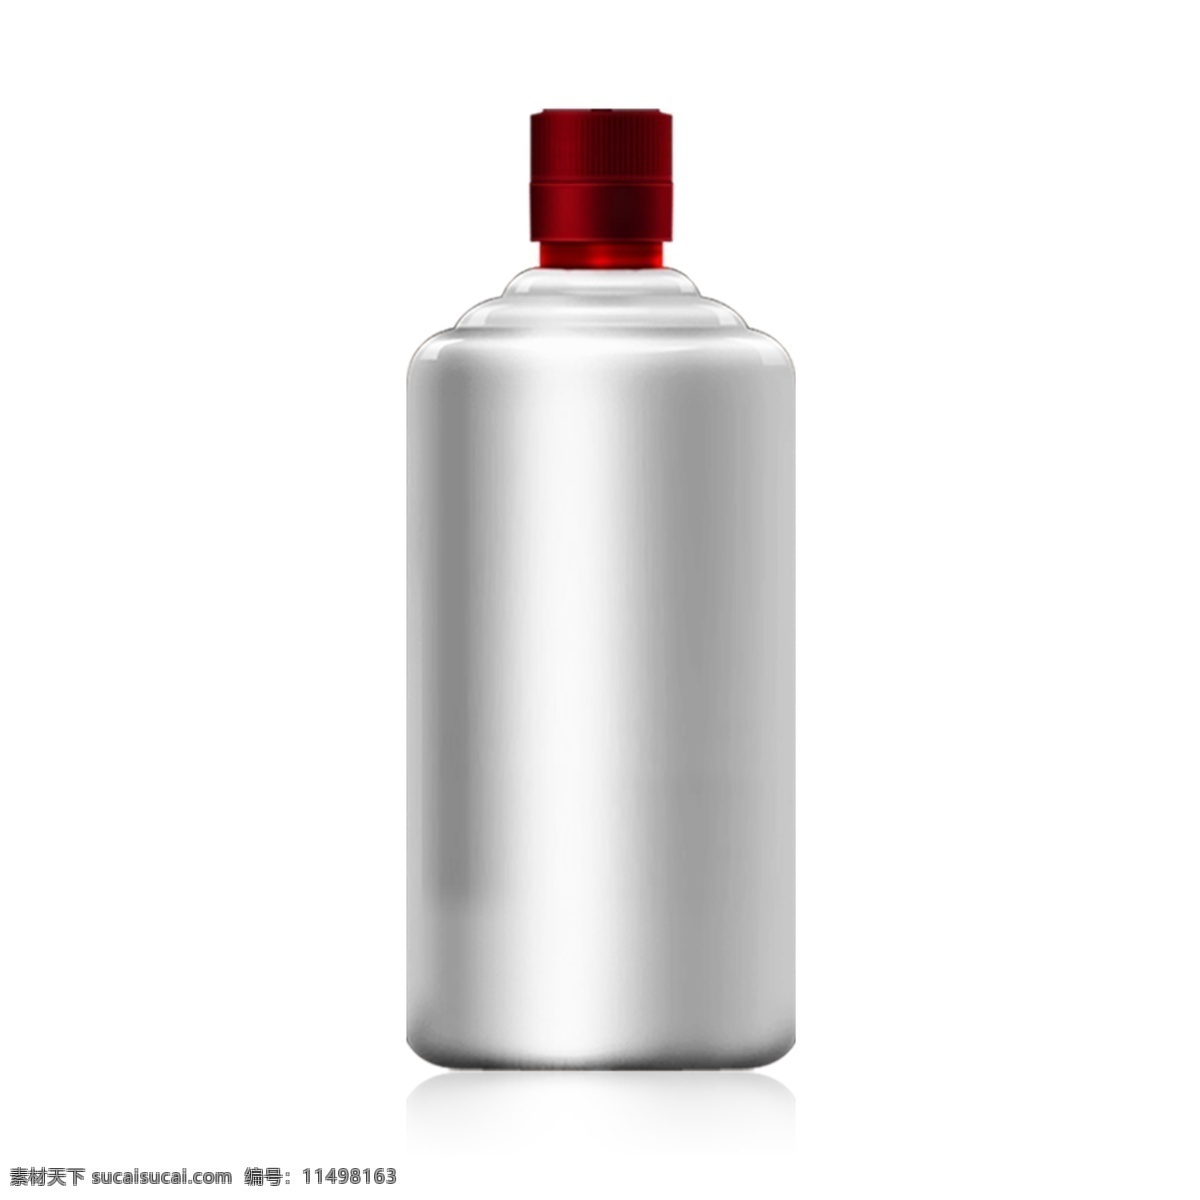 白色 茅 型 瓶 立体 酒瓶 白酒 类 效果图 茅型瓶 效果